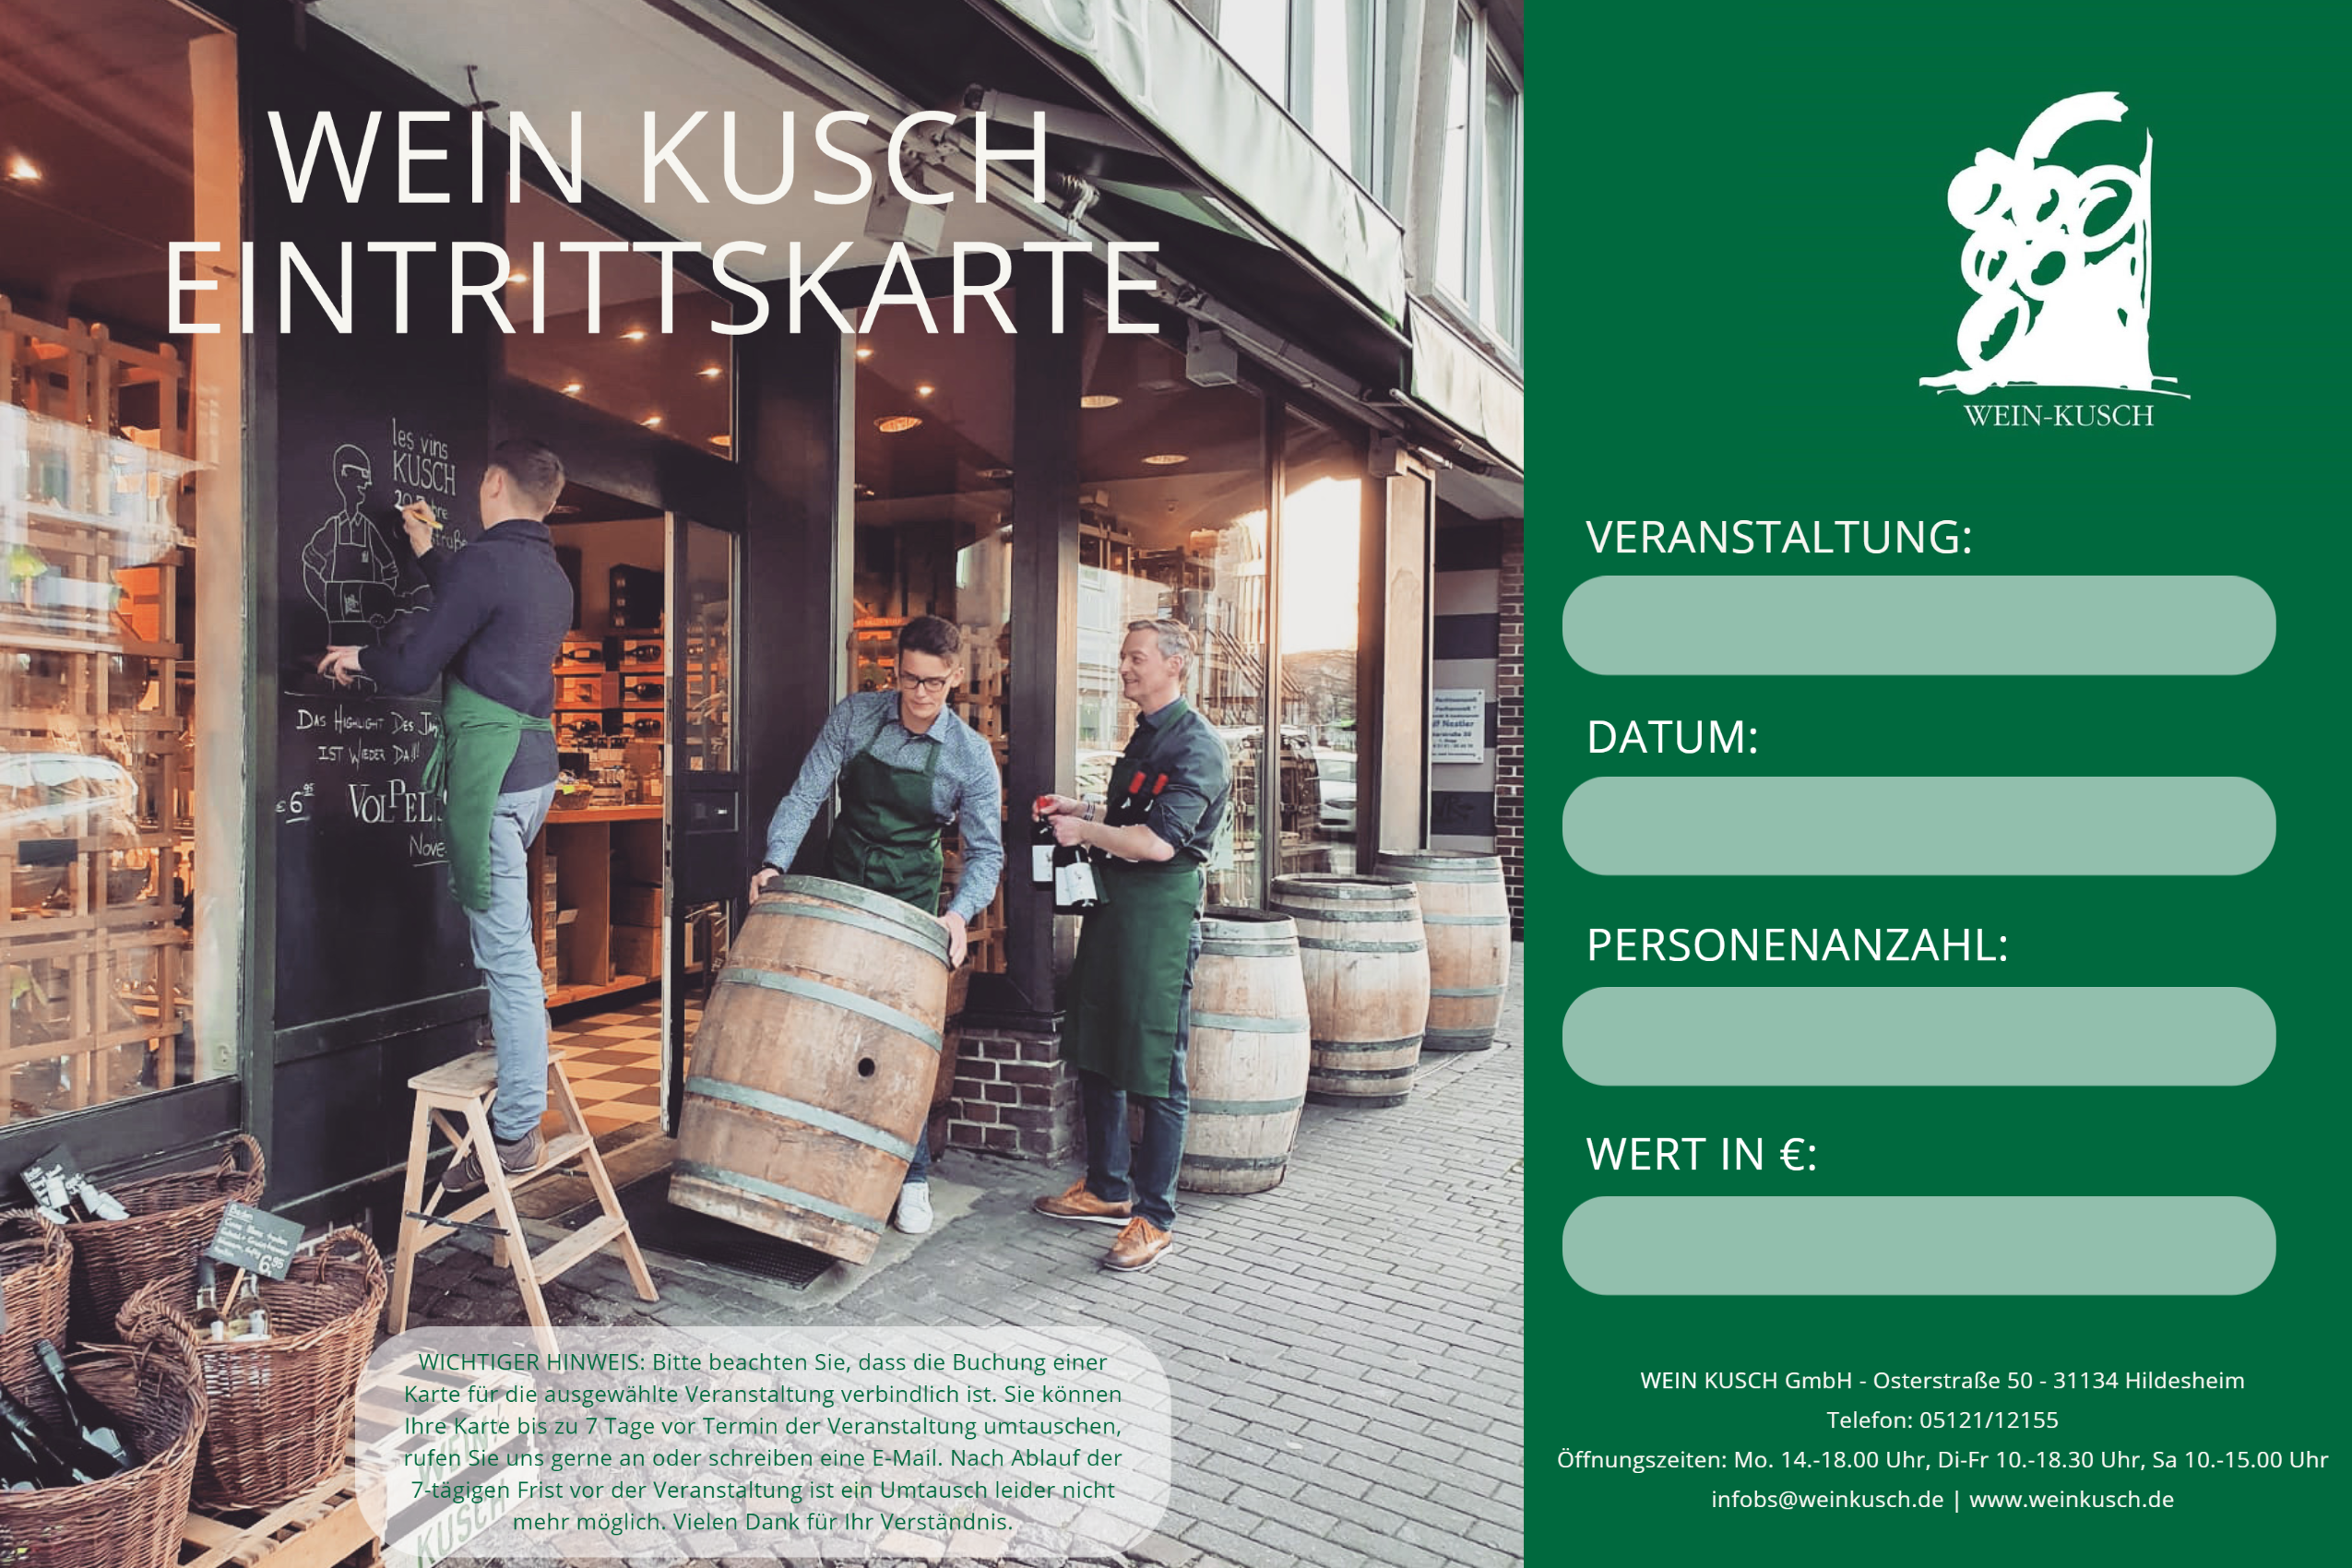 2023.08.11 - Rum Tasting "Don Papa auf der Spur" in Hildesheim 19.00 Uhr